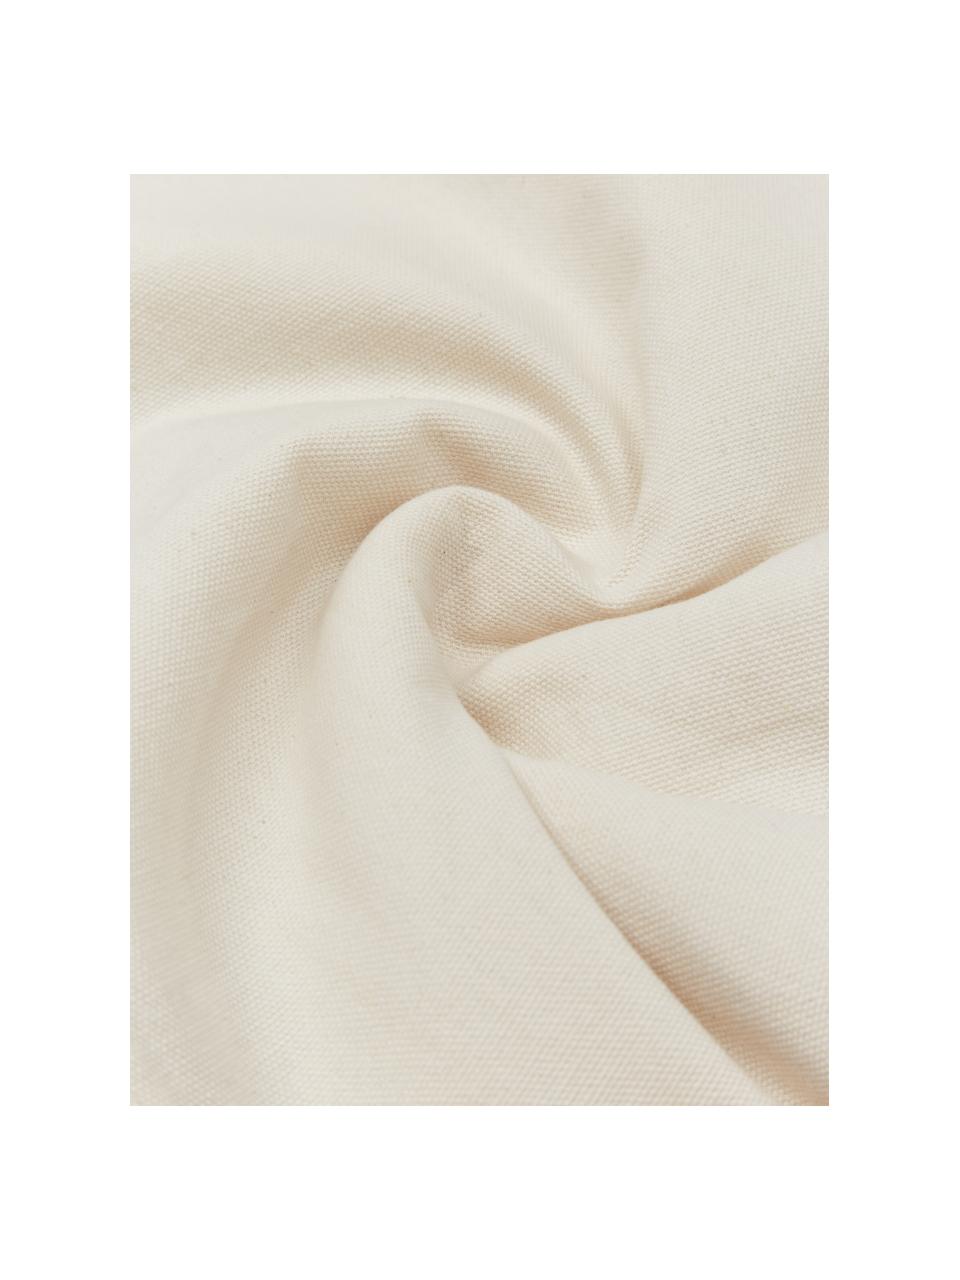 Poszewka na poduszkę z bawełny Ilari, 100% bawełna, Odcienie kremowego, S 45 x D 45 cm